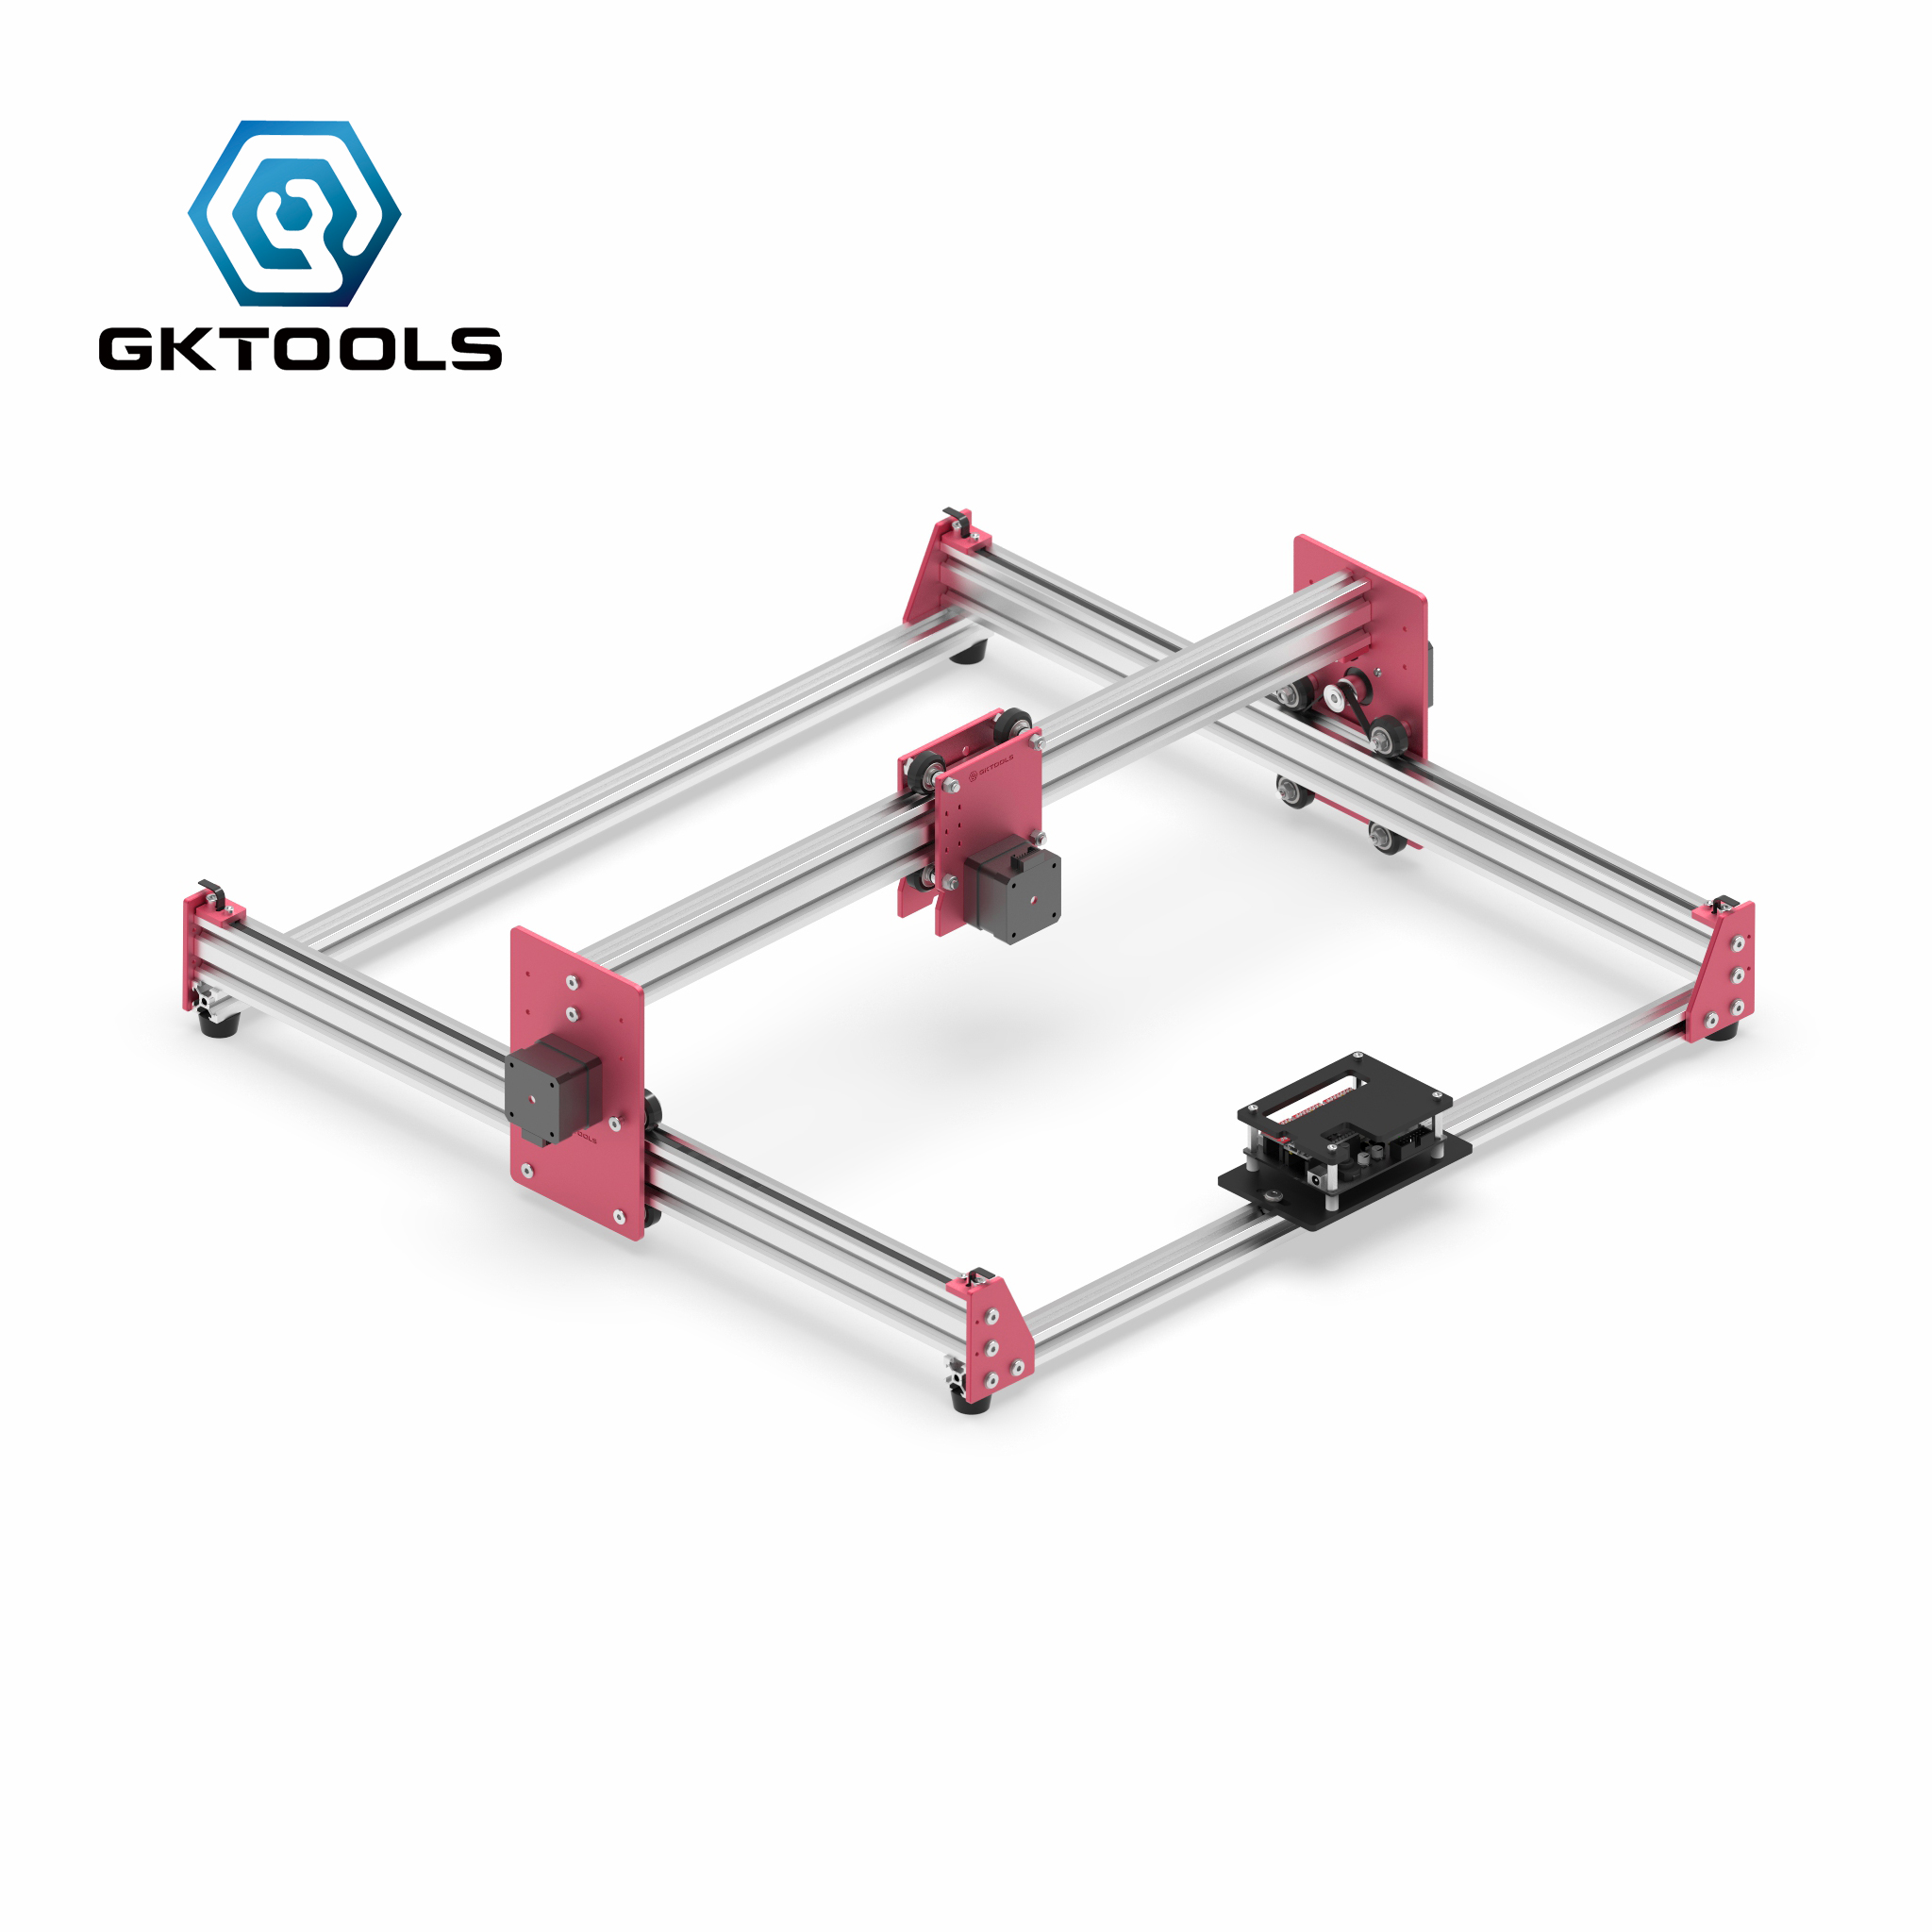 GKTOOLS 45*45cm DIY Mini CNC Laser Engraver Cutter Engraving Machine All Metal Frame Benbox GRBL EleksMaker Best Gift for Marker